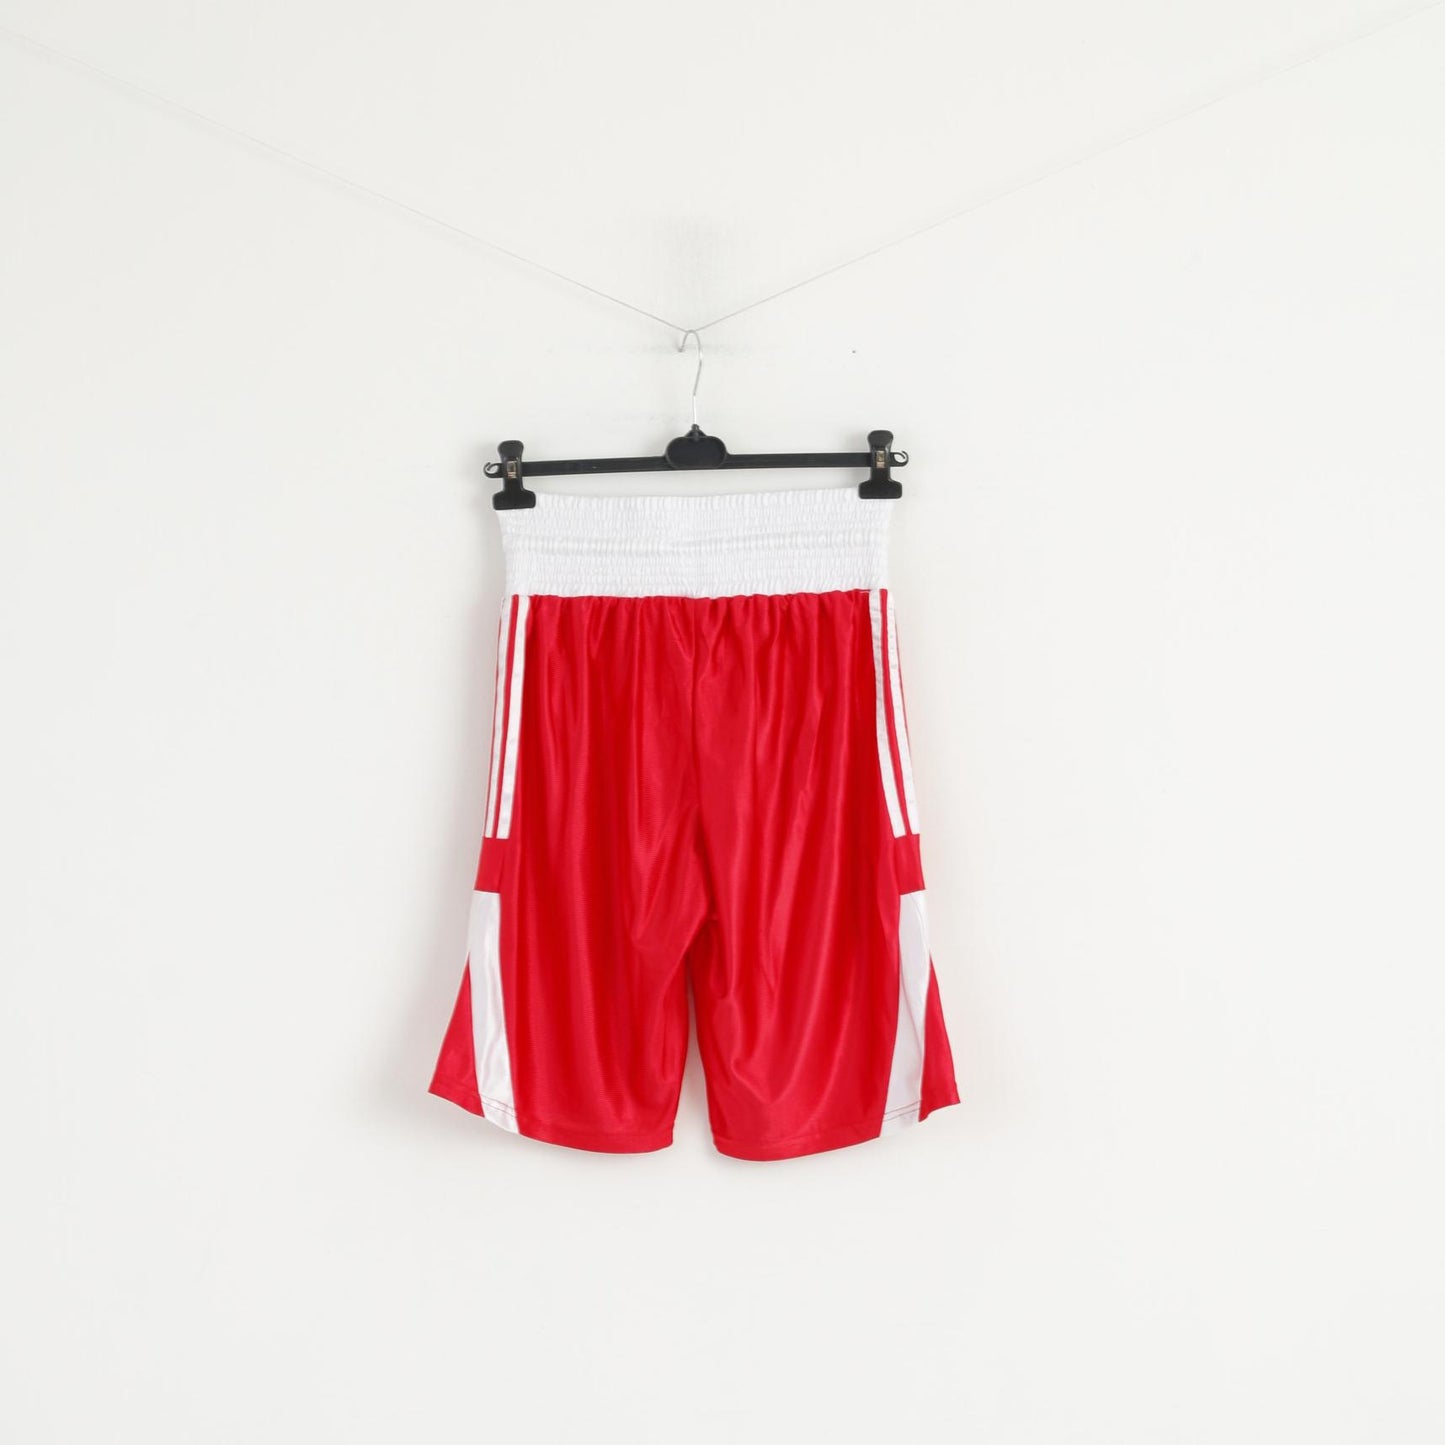 Adidas Uomo L Pantaloncini Rosso Bianco Boxe Lucido Abbigliamento sportivo da allenamento